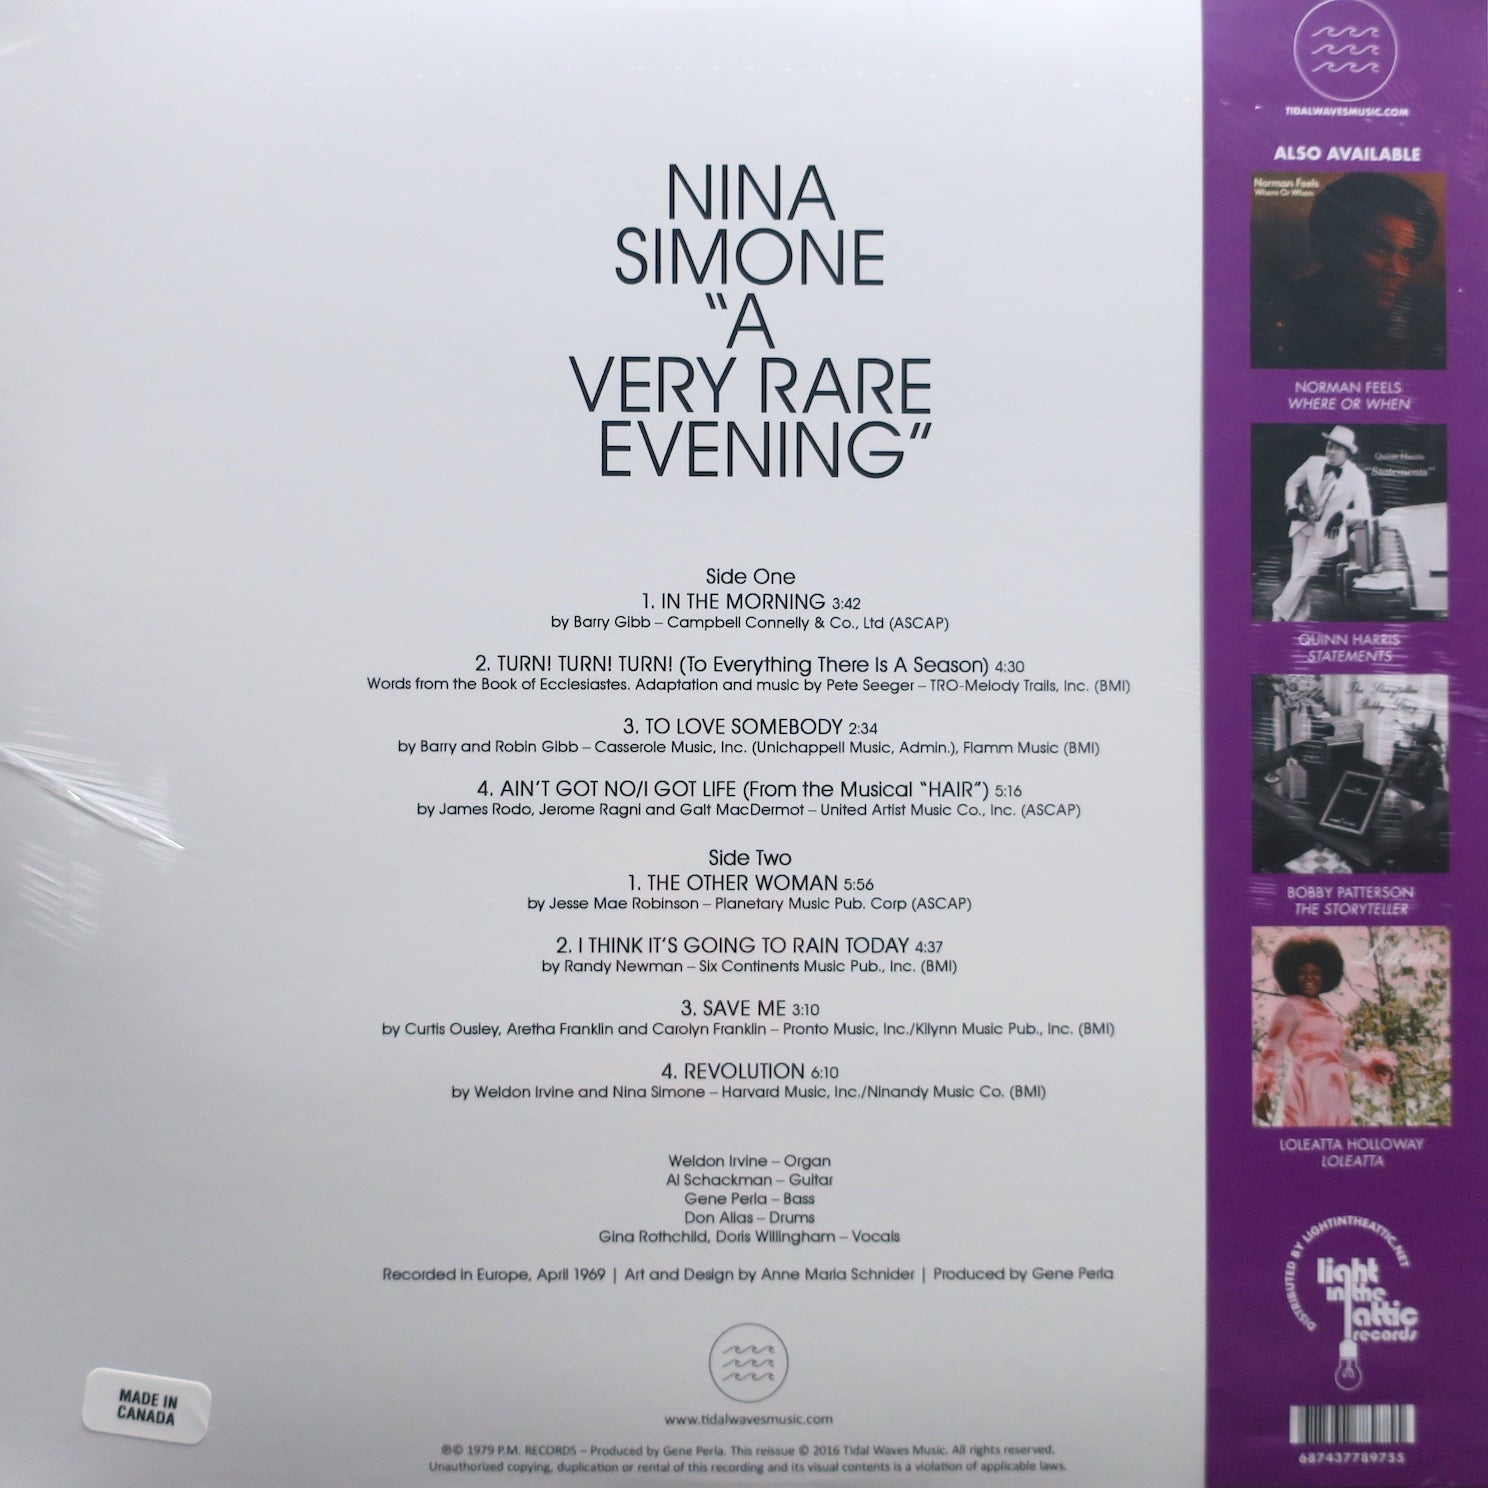 NINA SIMONE 'A Very Rare Evening' Vinyl LP – GOLDMINE RECORDS